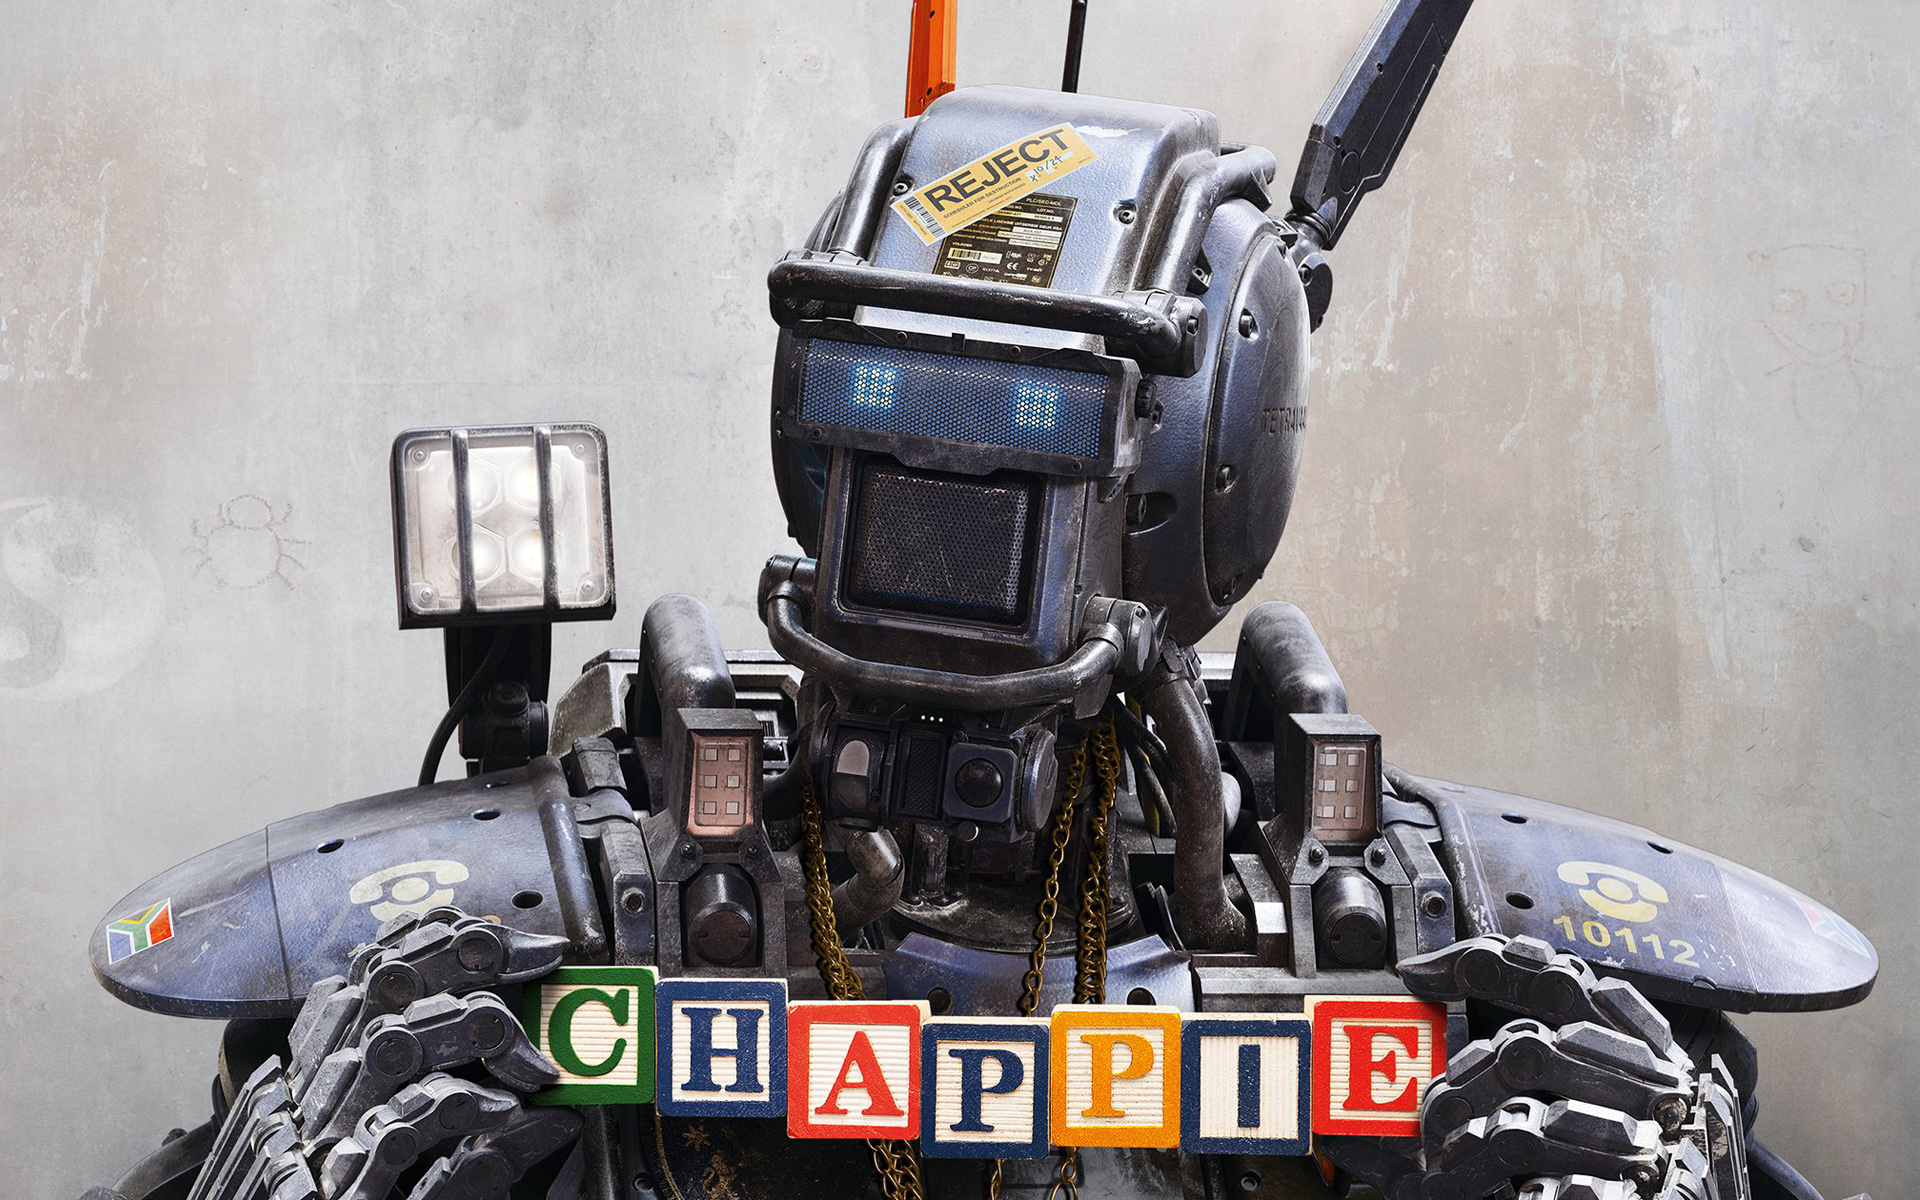 Robot chappie